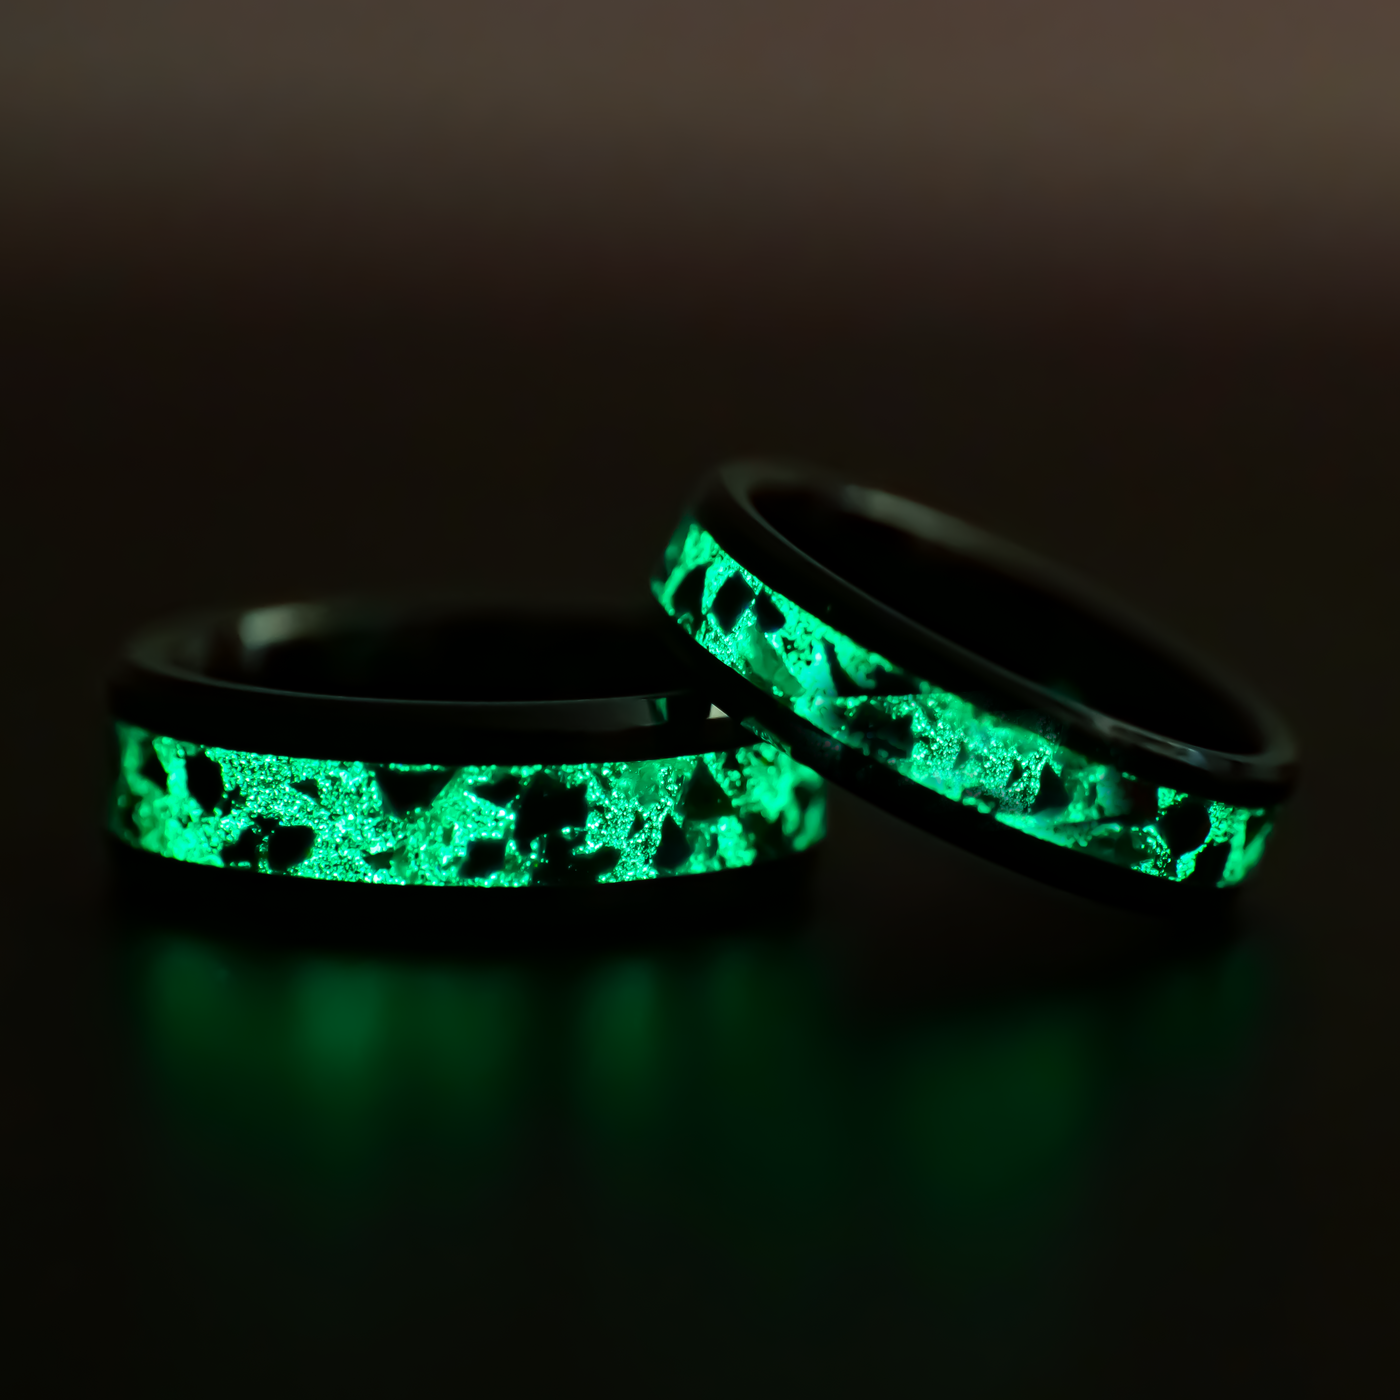 Matching Ember Glowstone Wedding Ring Set in Black Ceramic - Patrick Adair Designs